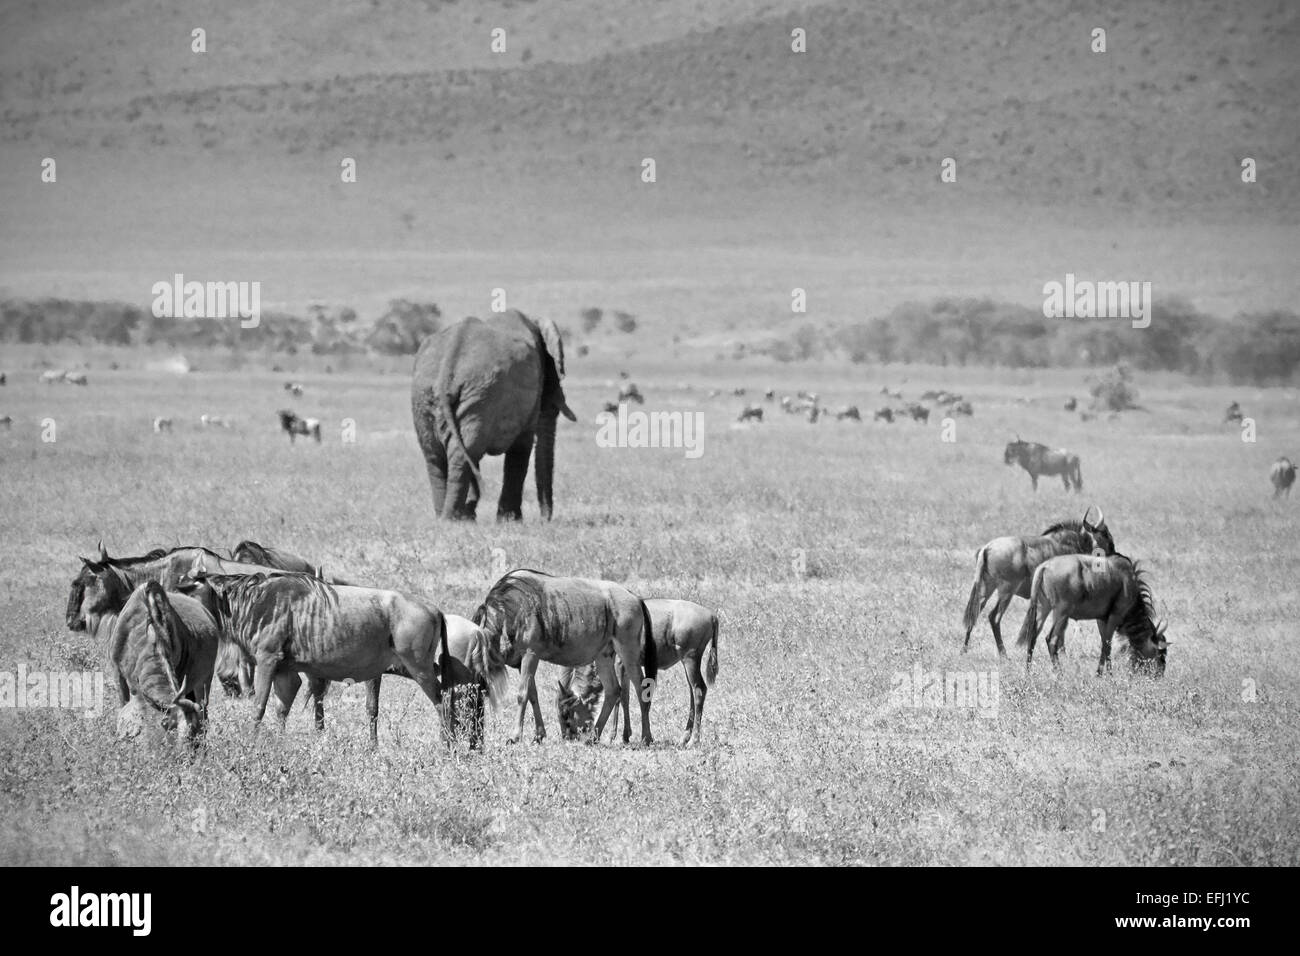 Imagen en blanco y negro de un elefante africano, Loxodonta africana, caminando en medio de una manada de azul, Connochaete wilebeest Foto de stock